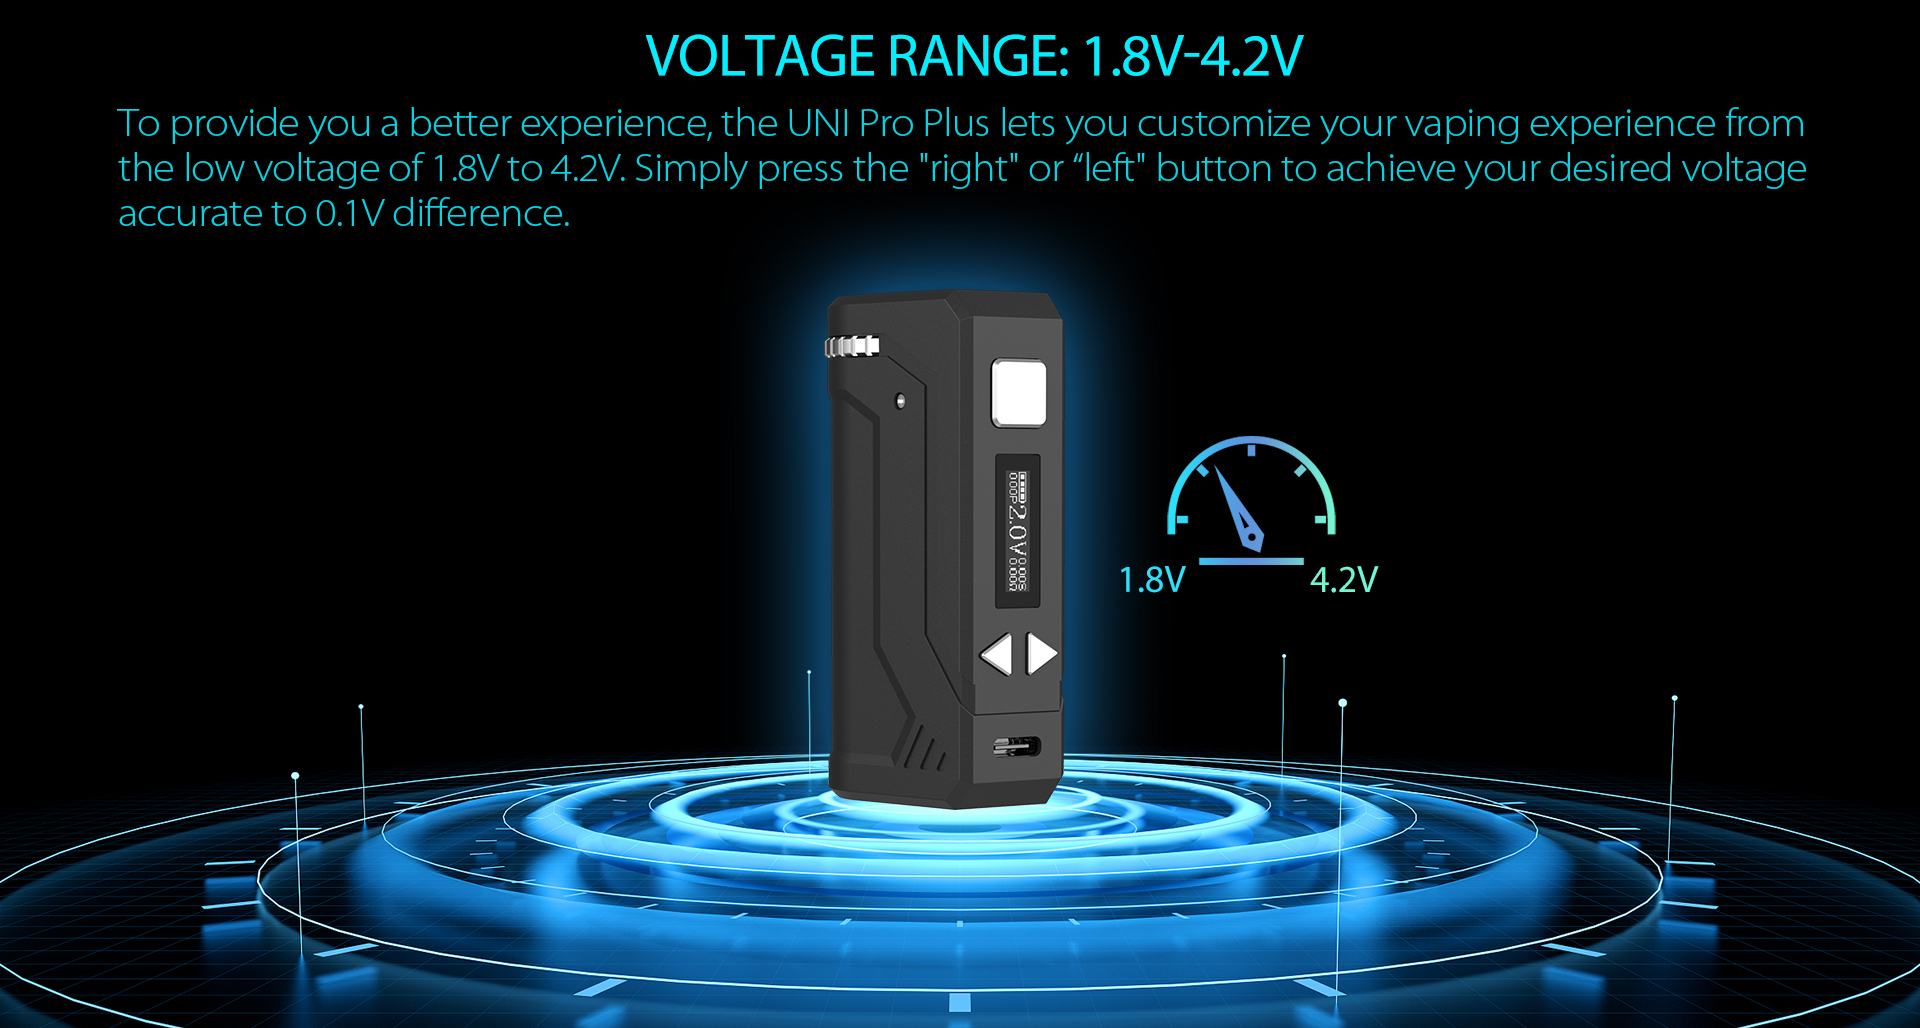 Yocan UNI Pro Plus voltage range: 1.8V-4.2V